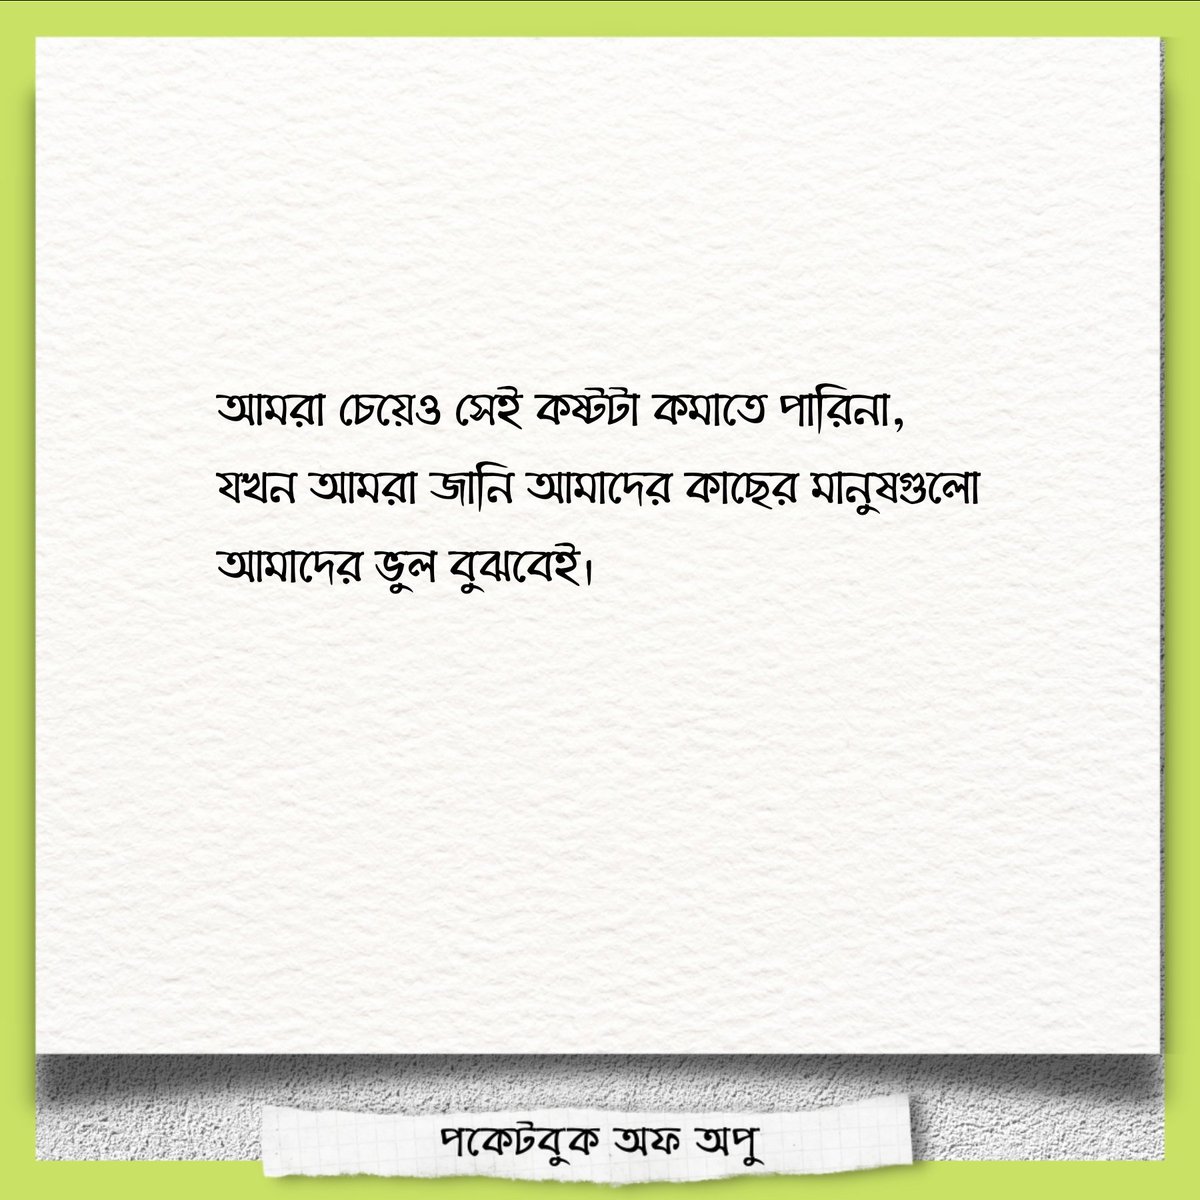 আমরা চেয়েও পারিনা... 

#pocketbookofapu #banglawriter #bengaliwriting #banglawritings #bangla #bengalipoem #bengaliquote #bengaliquotes #bengalipoetry #bengali #banglakabita